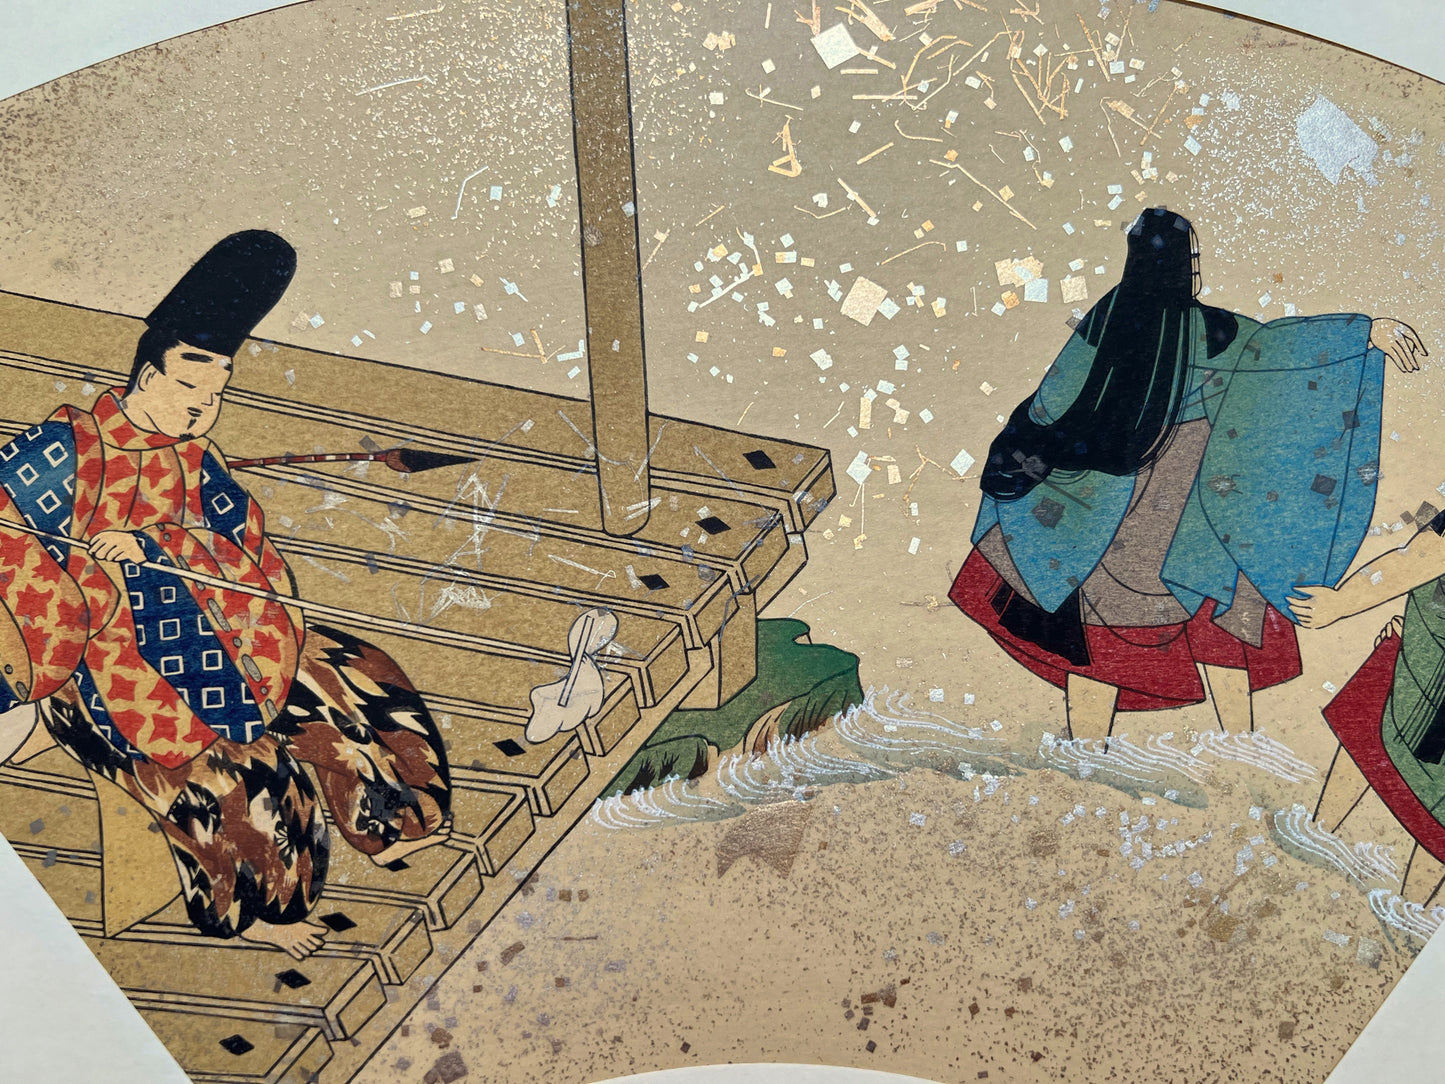 Estampe japonaise en forme d'éventail parsemée de fragments d'or et d'argent, gros plan sur la terrasse au-dessus de la rivière, homme qui passe la serpillère, femme se baignant.